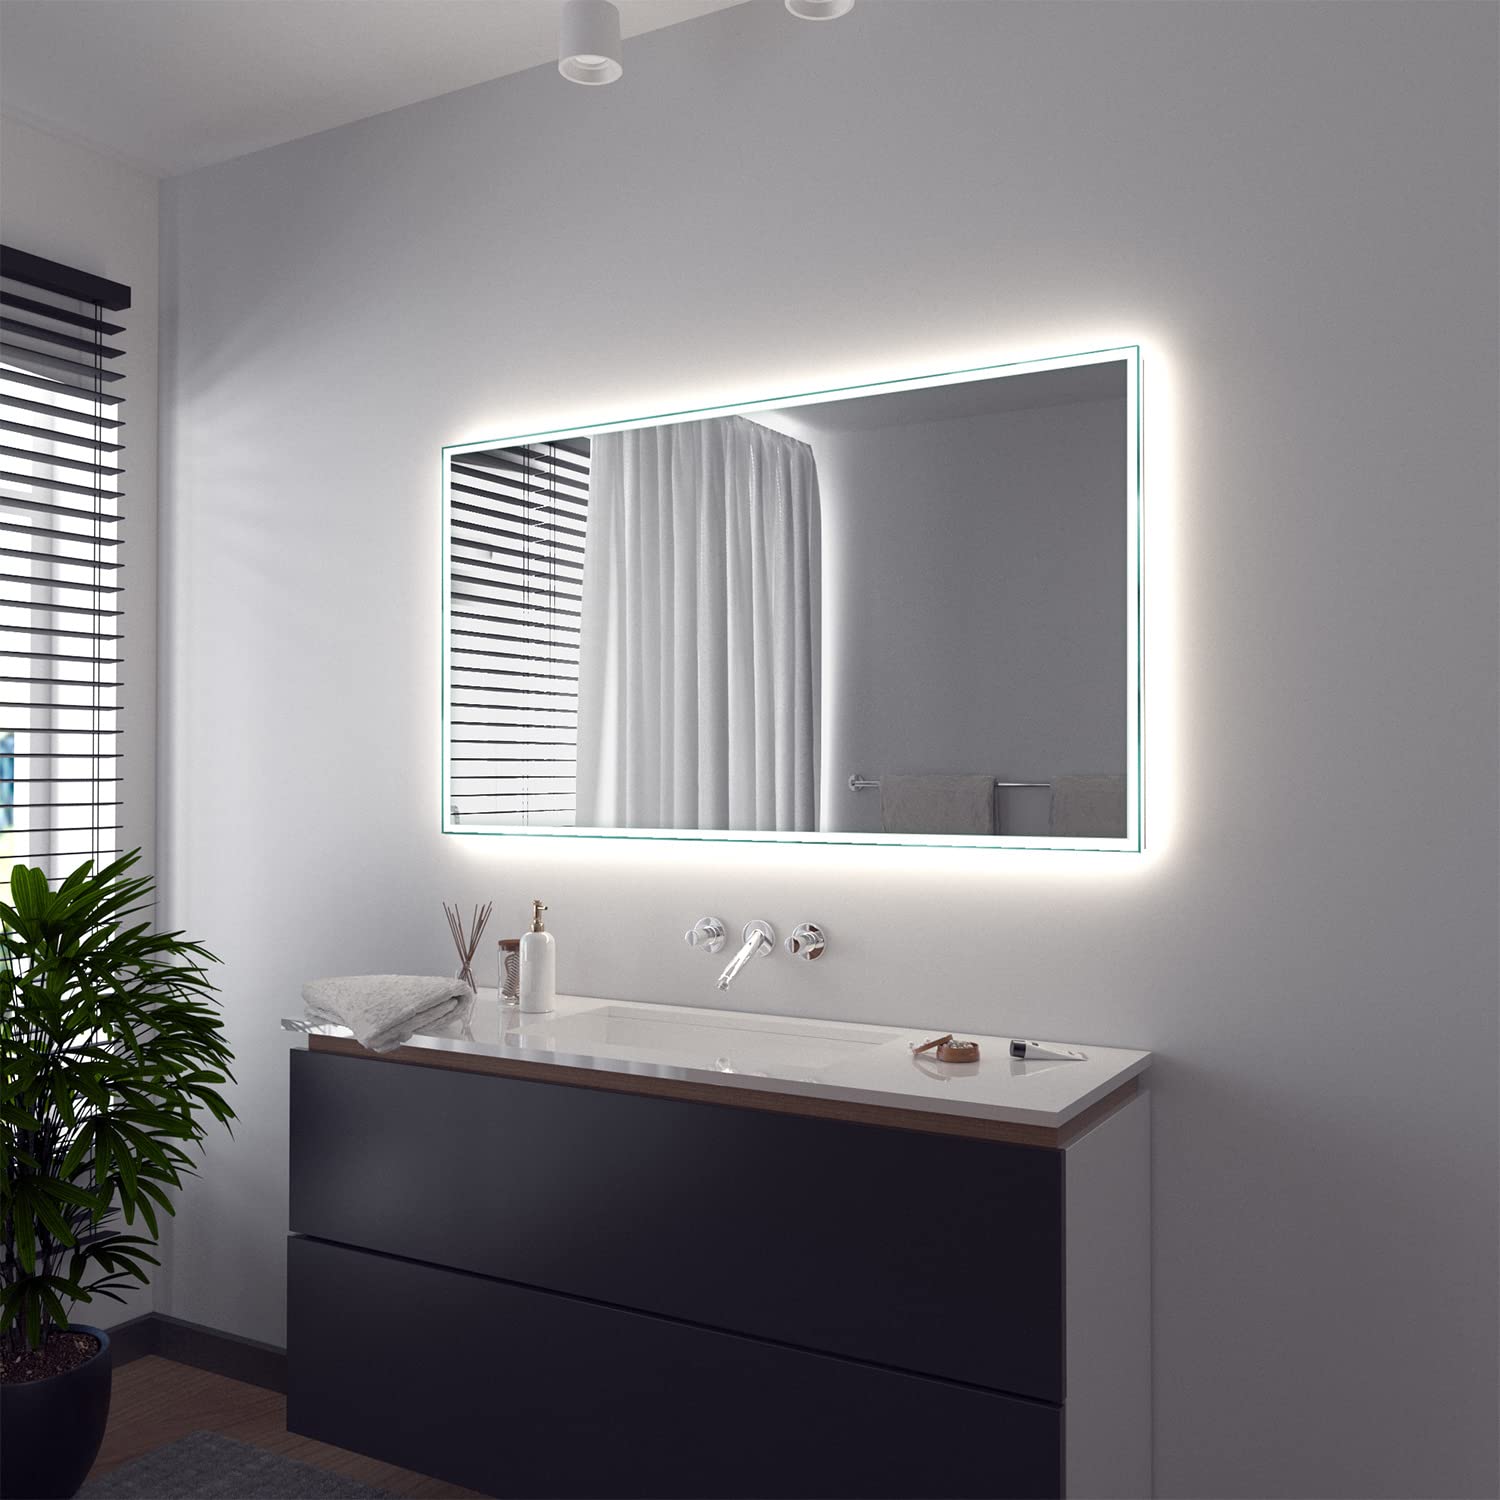 SARAR Wandspiegel mit rundum LED-Beleuchtung 90x70 cm Made in Germany Vittoria eckiger Badspiegel Spiegel mit Beleuchtung Badezimmerspiegel